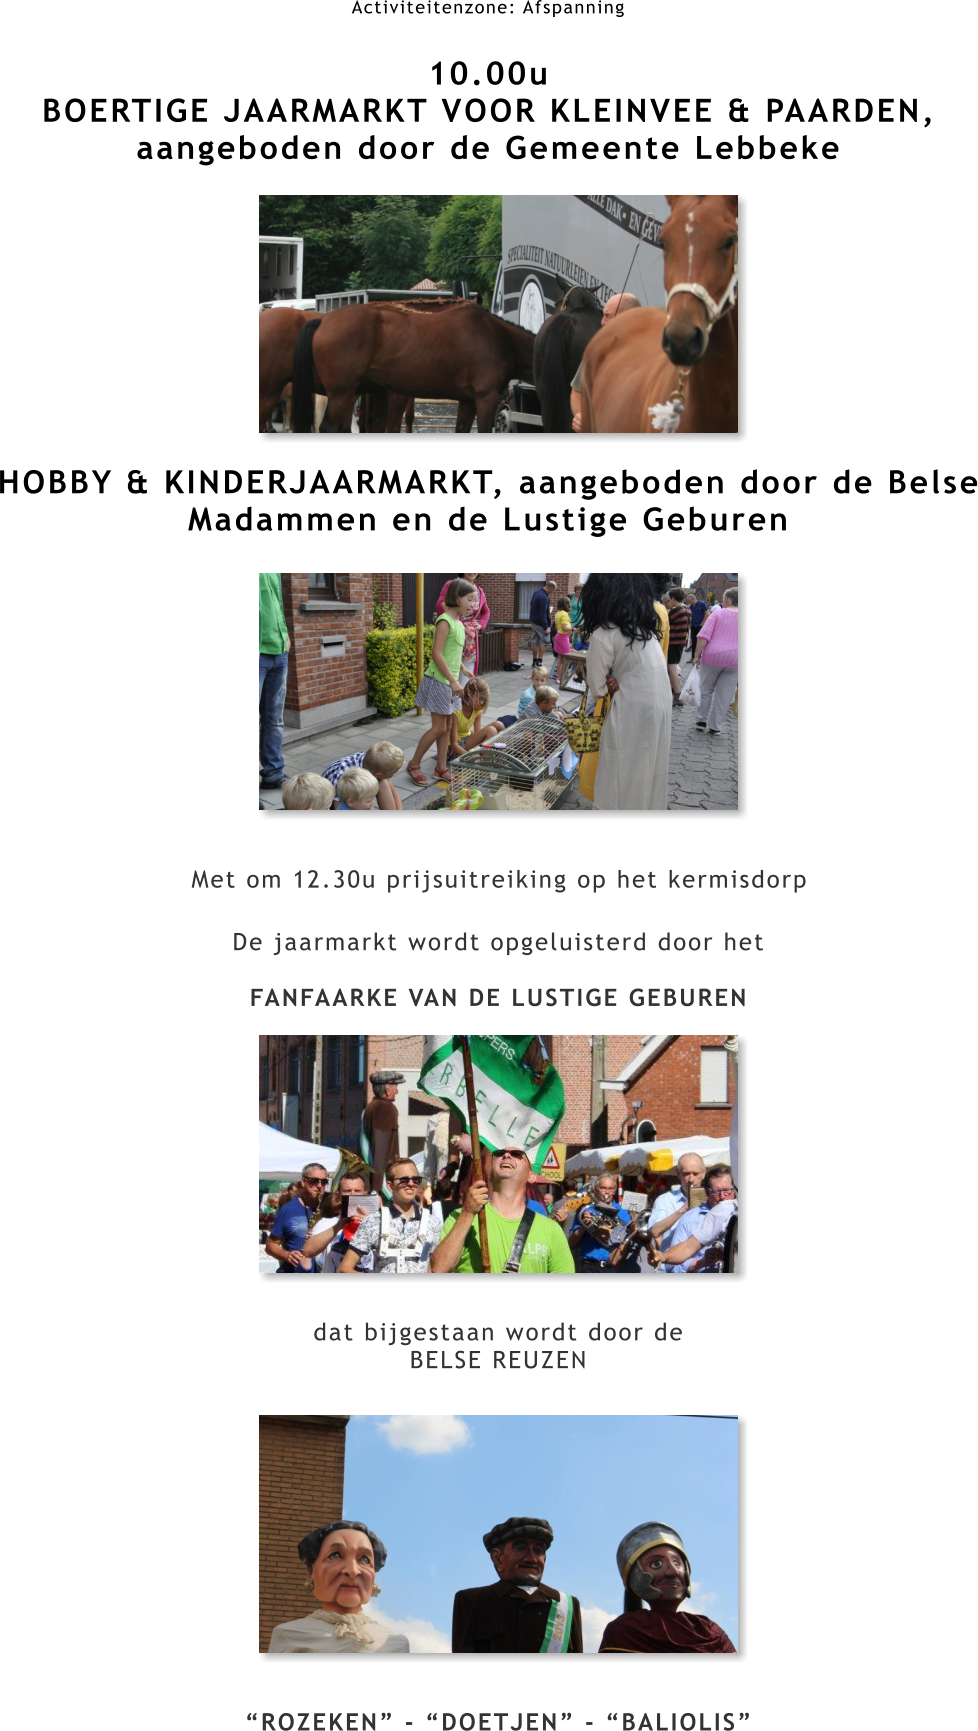 Activiteitenzone: Afspanning  10.00u BOERTIGE JAARMARKT VOOR KLEINVEE & PAARDEN, aangeboden door de Gemeente Lebbeke         HOBBY & KINDERJAARMARKT, aangeboden door de Belse Madammen en de Lustige Geburen Met om 12.30u prijsuitreiking op het kermisdorp De jaarmarkt wordt opgeluisterd door het  FANFAARKE VAN DE LUSTIGE GEBUREN            dat bijgestaan wordt door de BELSE REUZEN             “ROZEKEN” - “DOETJEN” - “BALIOLIS”